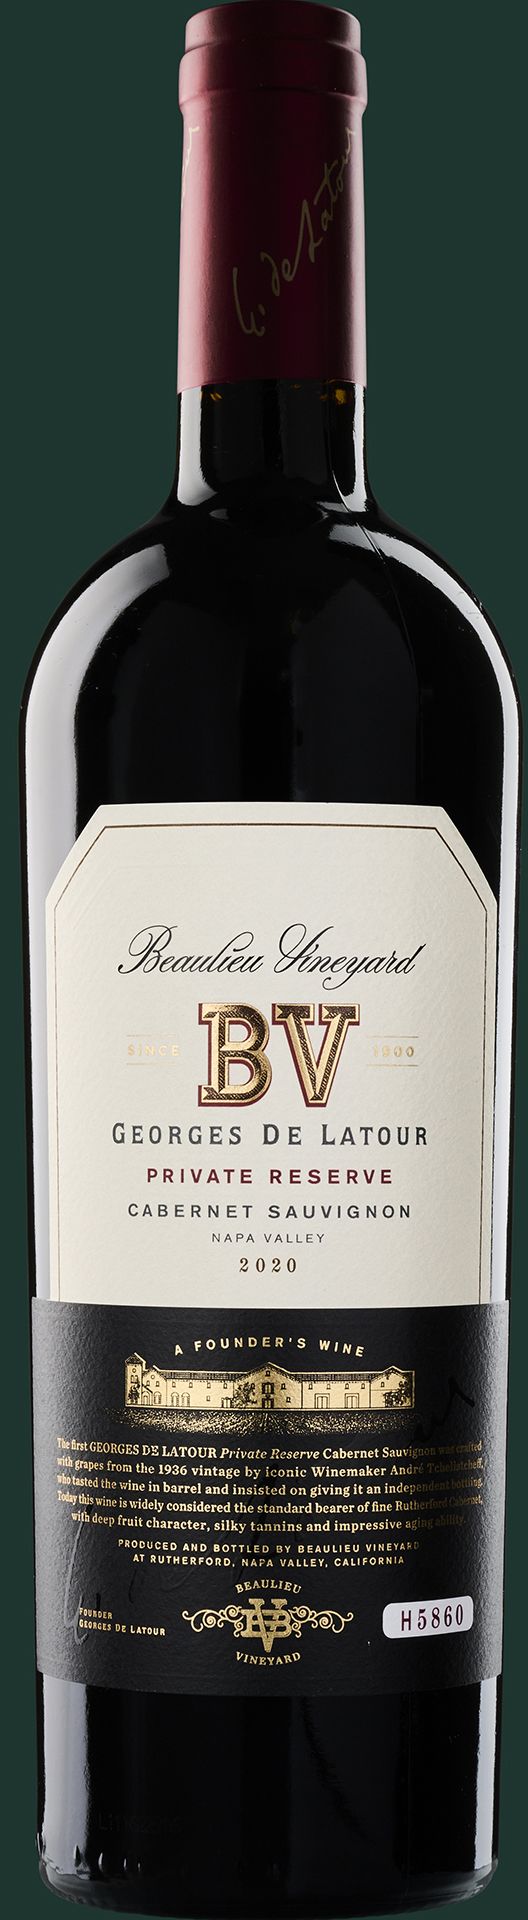 WBSS24 Beaulieu Vineyard Georges de Latour Private Reserve Cabernet Sauvignon 2020